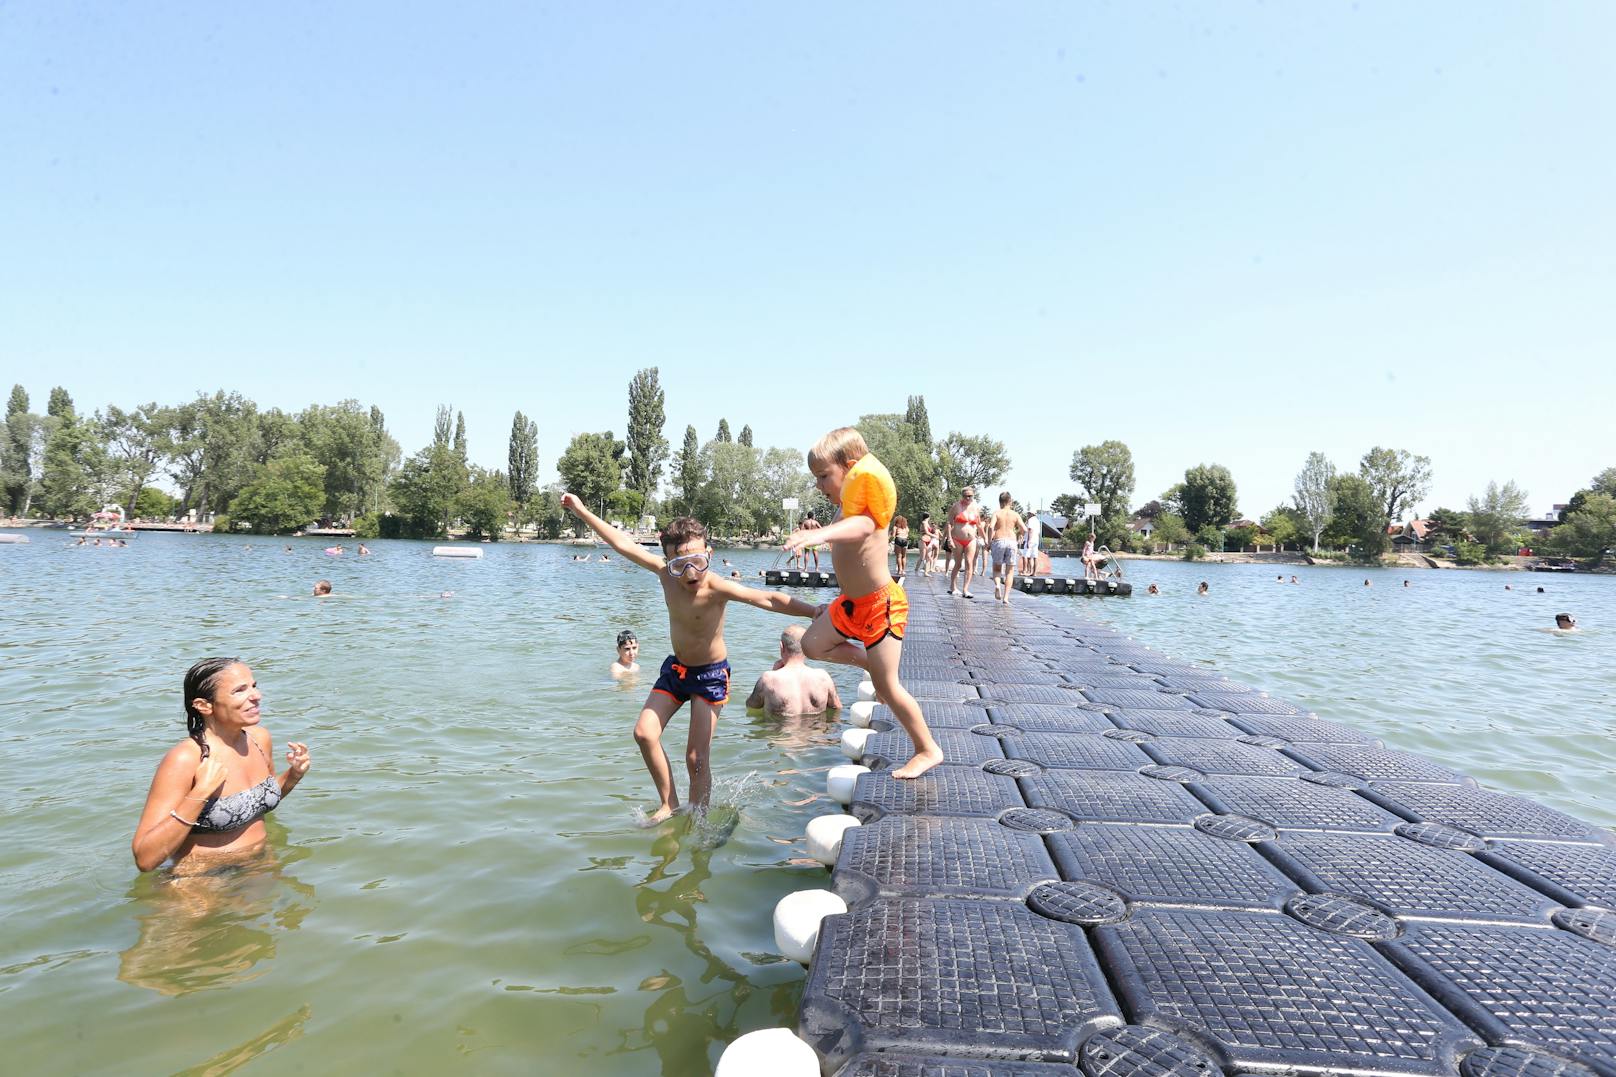 Plantschen mit Abstand war in der heurigen Corona-Freibadsaison das Motto in Wiens Bädern. Trotz der strengen Regeln ließen sich knapp 1,2 Millionen Wasserratten den Badespaß nicht verderben.